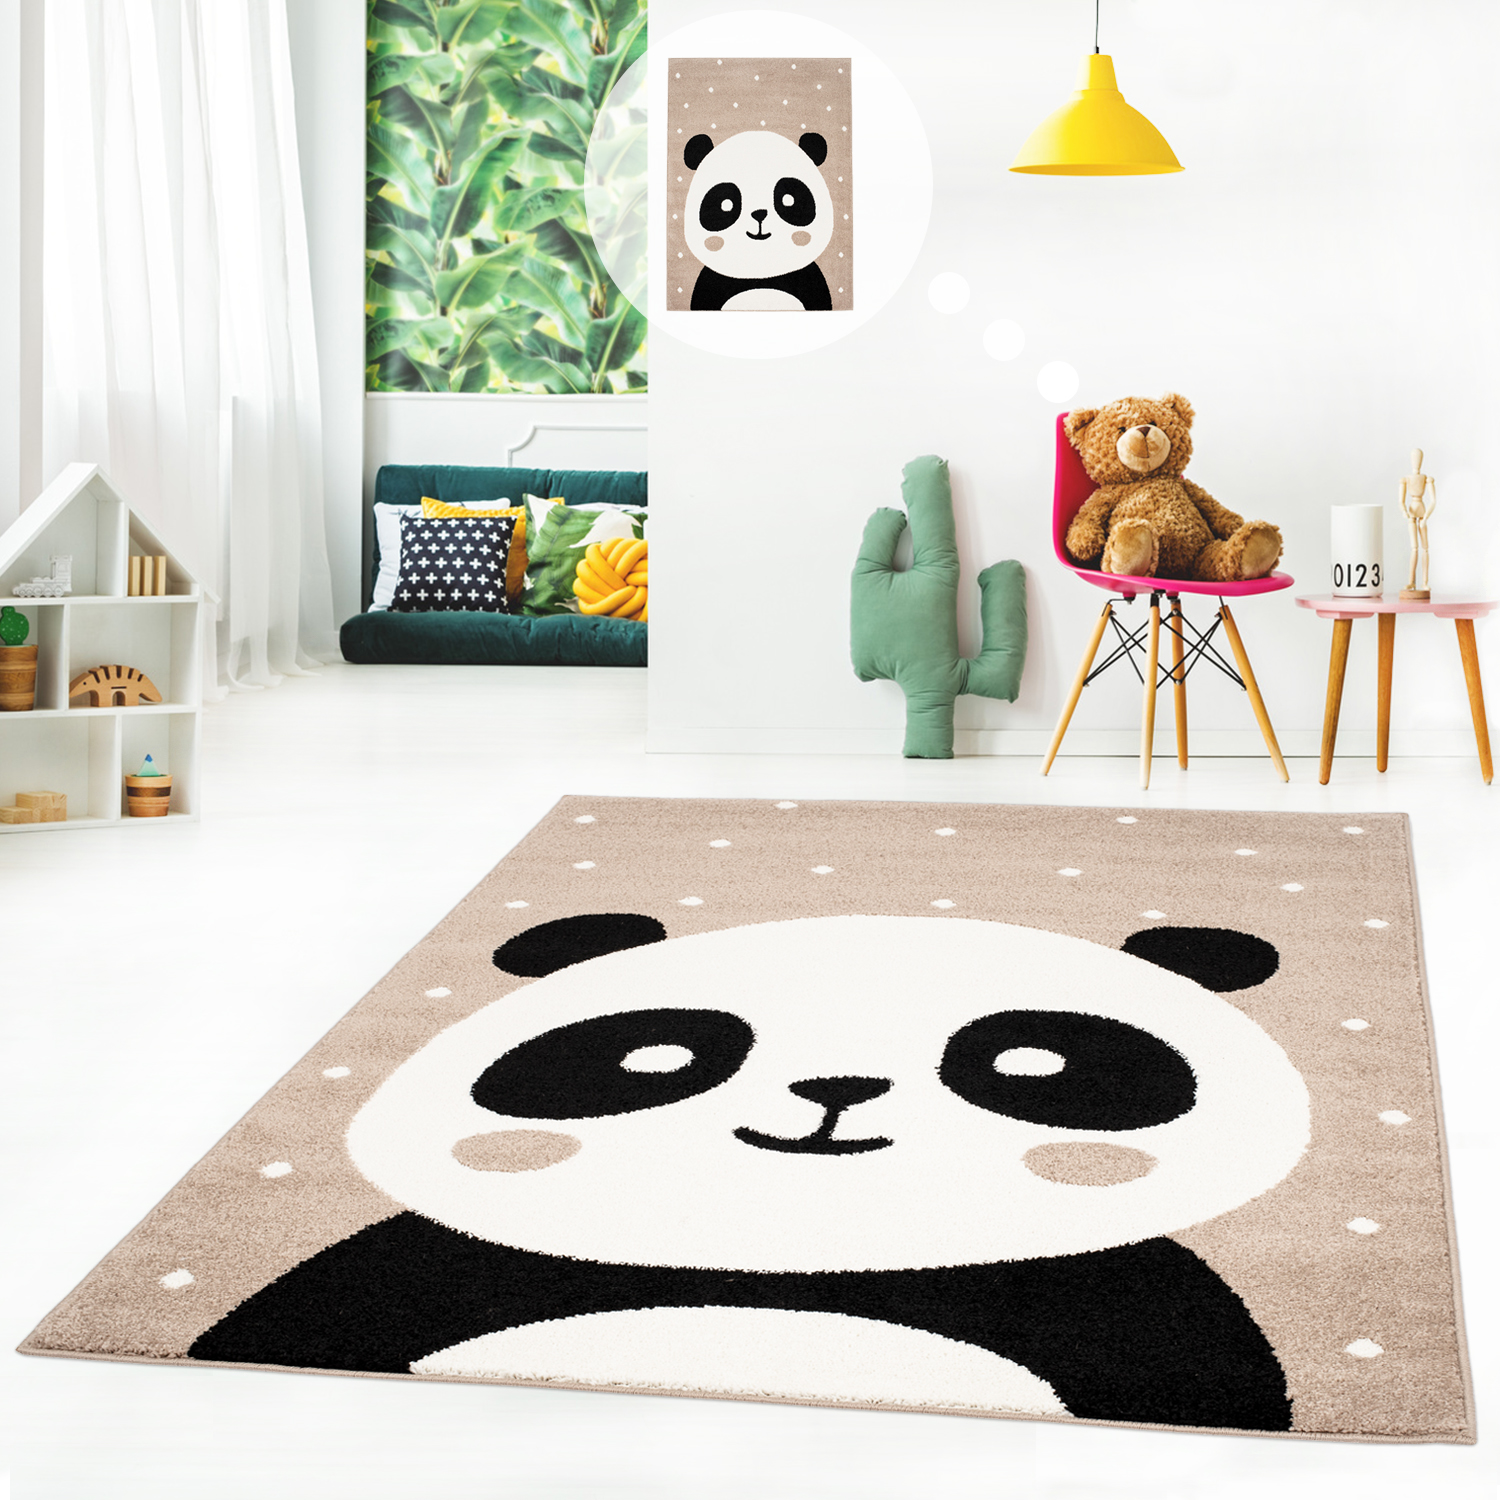 Flachflor in | gepunktet fürs Panda-Bär Teppich Farben weiß mit myshop24 Kinderteppich Kurzflor 3 Kinderzimmer Spielteppich